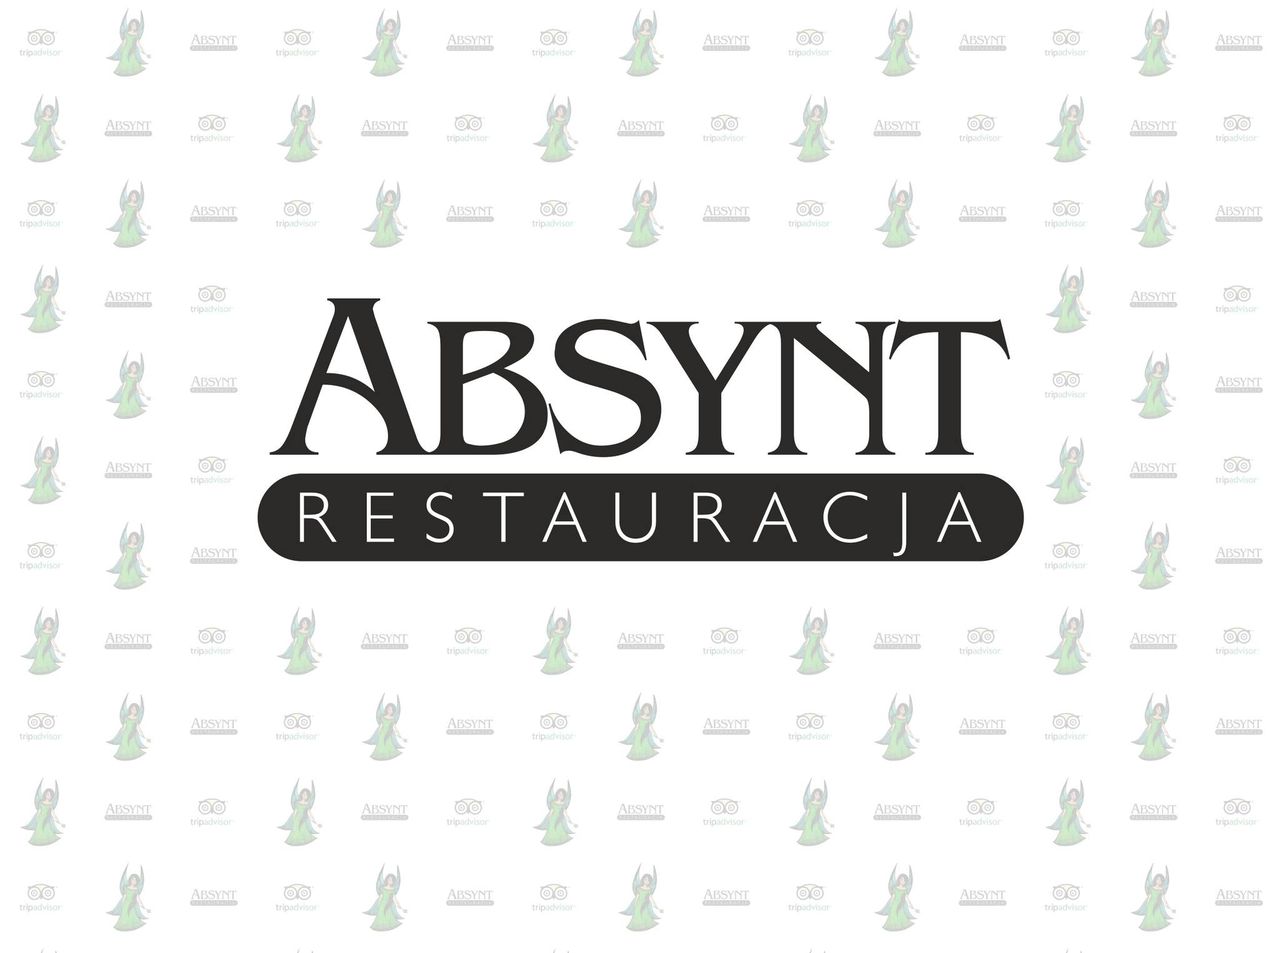 Restauracja Absynt